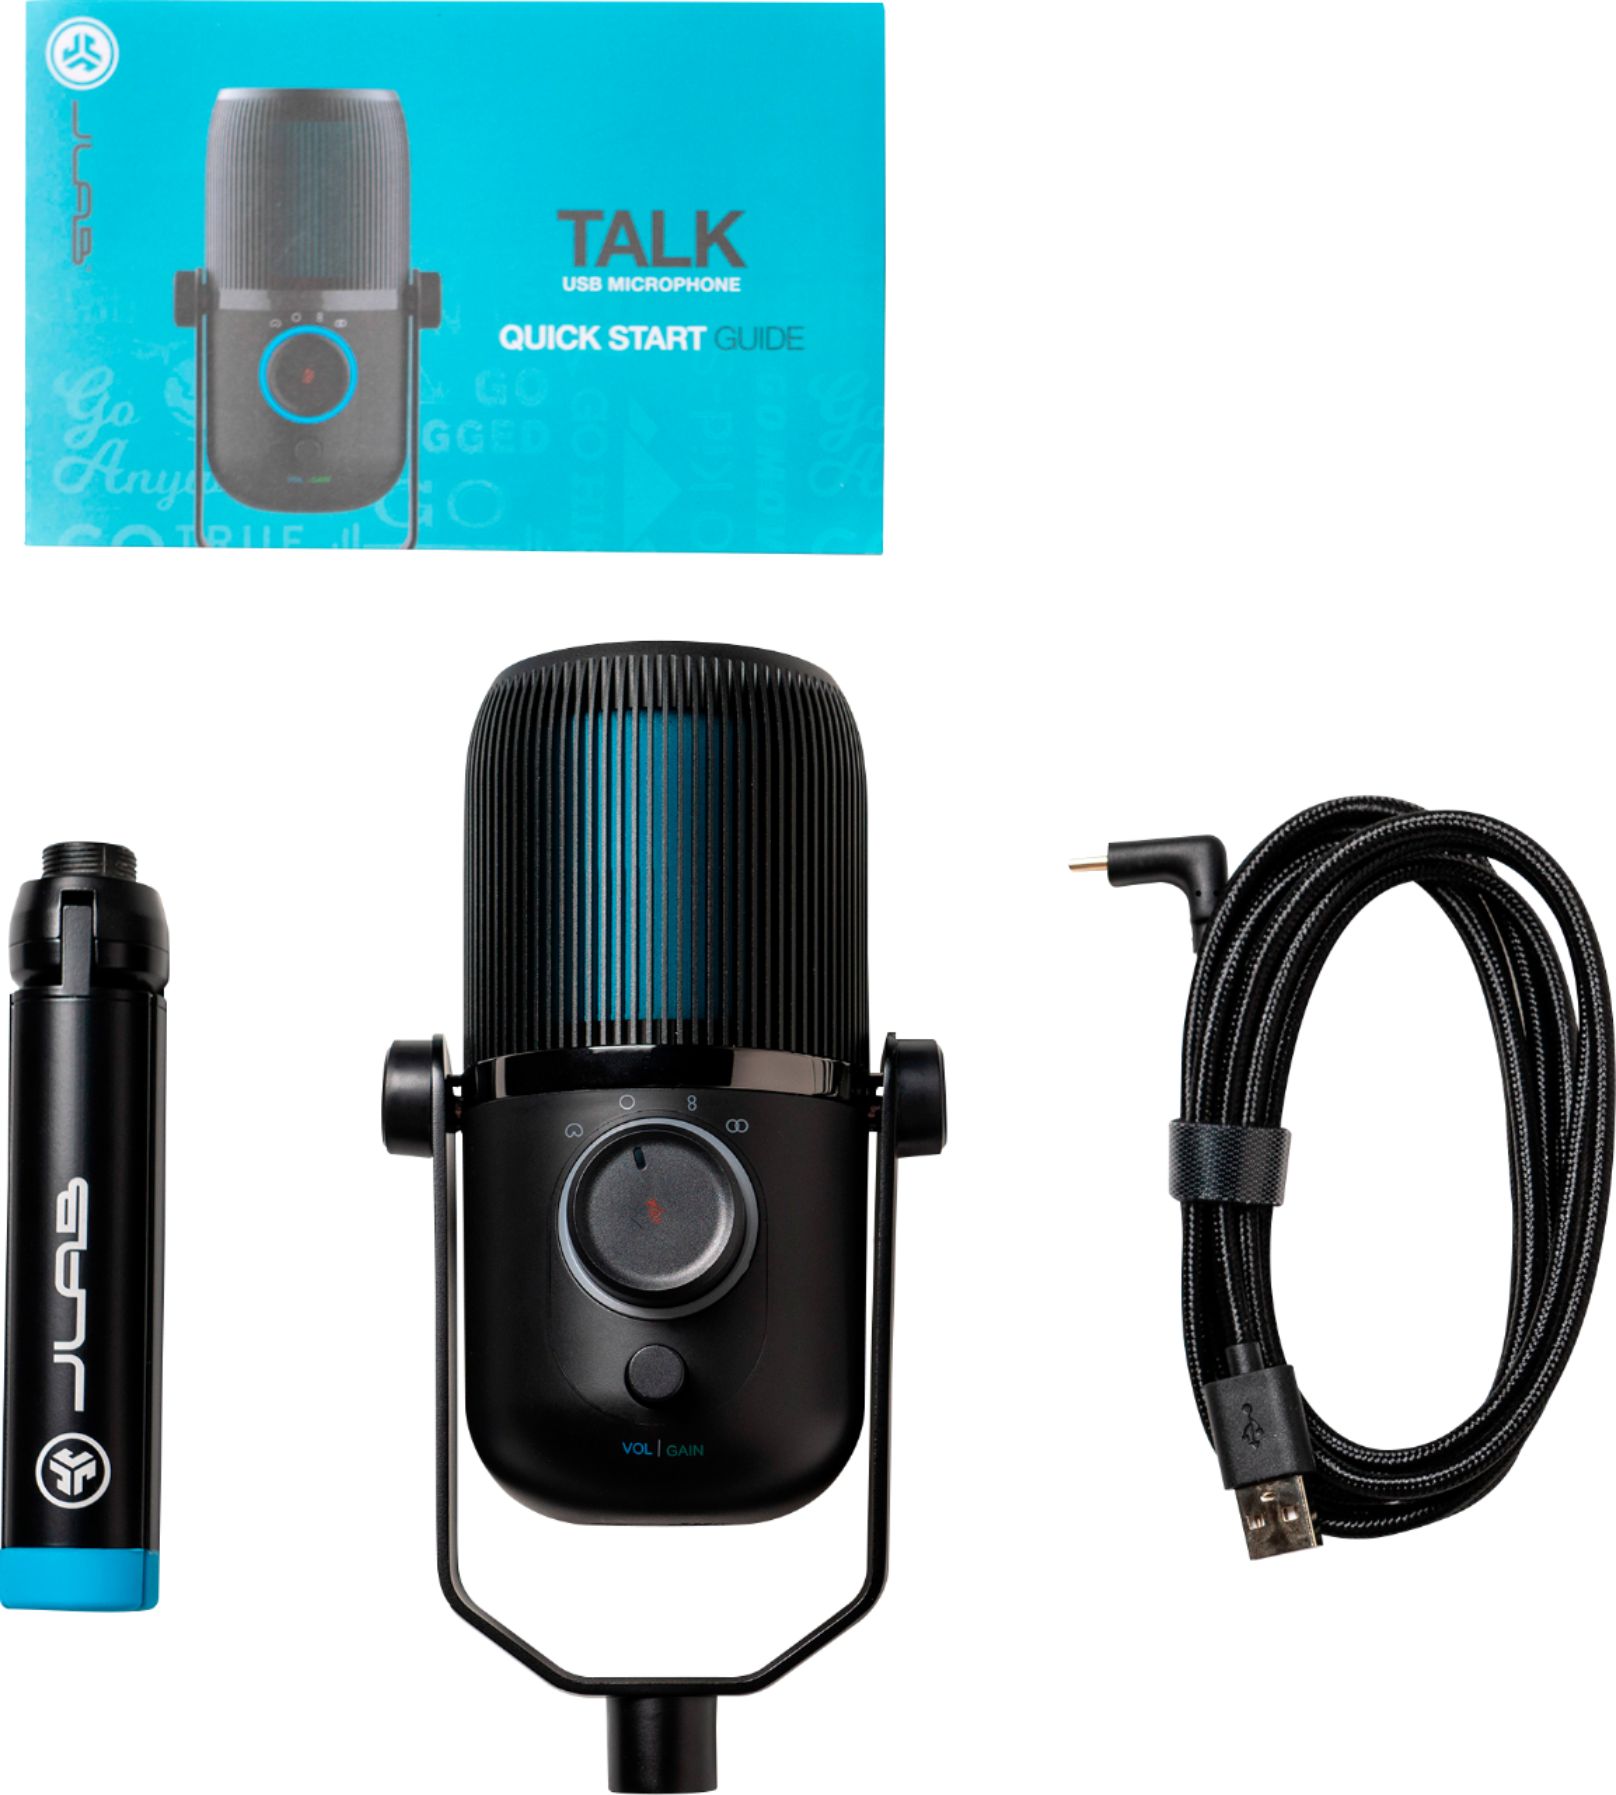 GO Talk USB Microphone – JLab